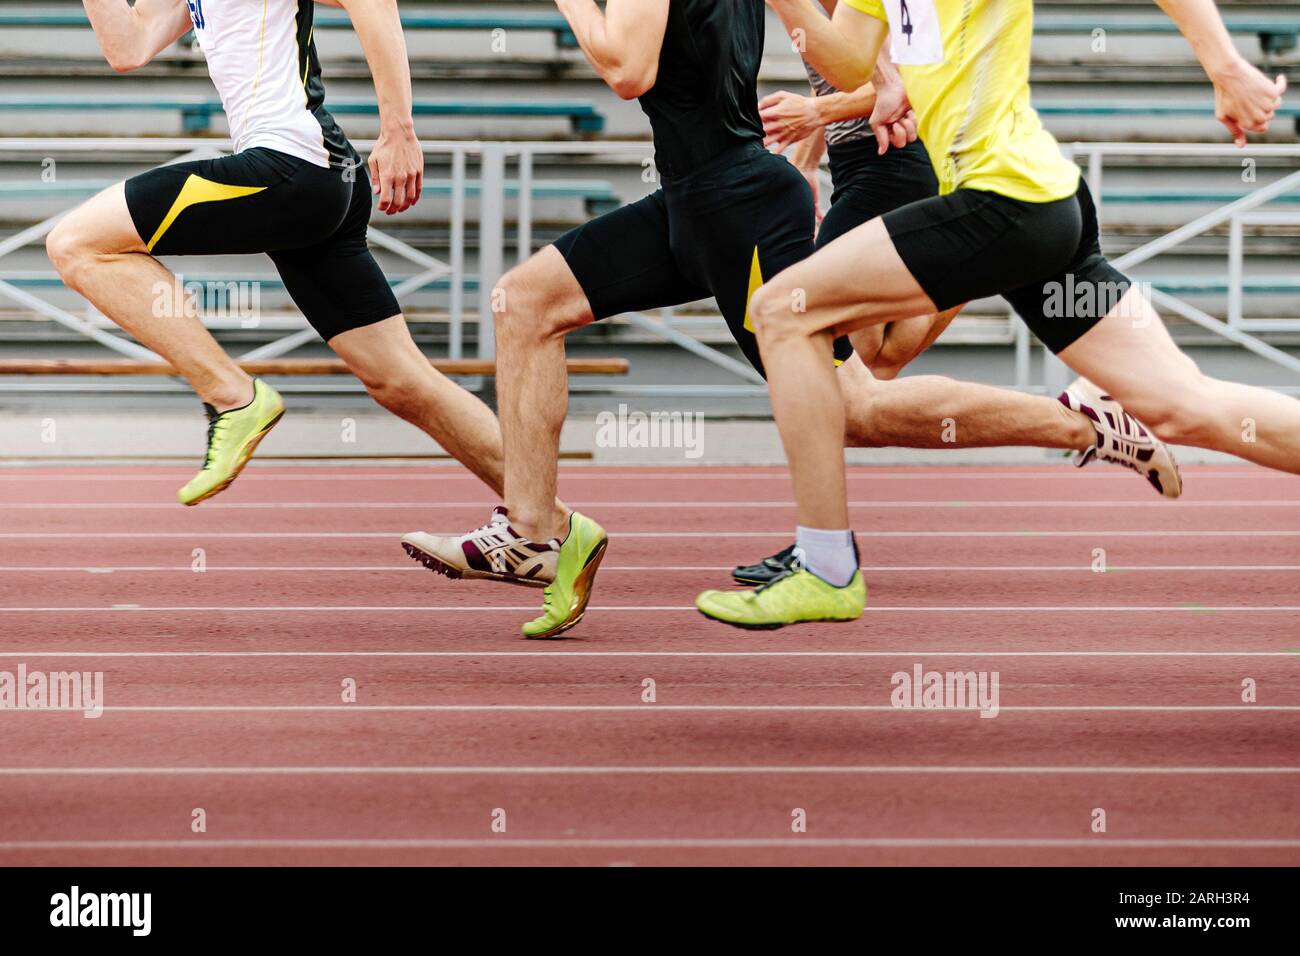 Beine Männer Athleten Läufer laufen in der Leichtathletik im Sprint Stockfoto